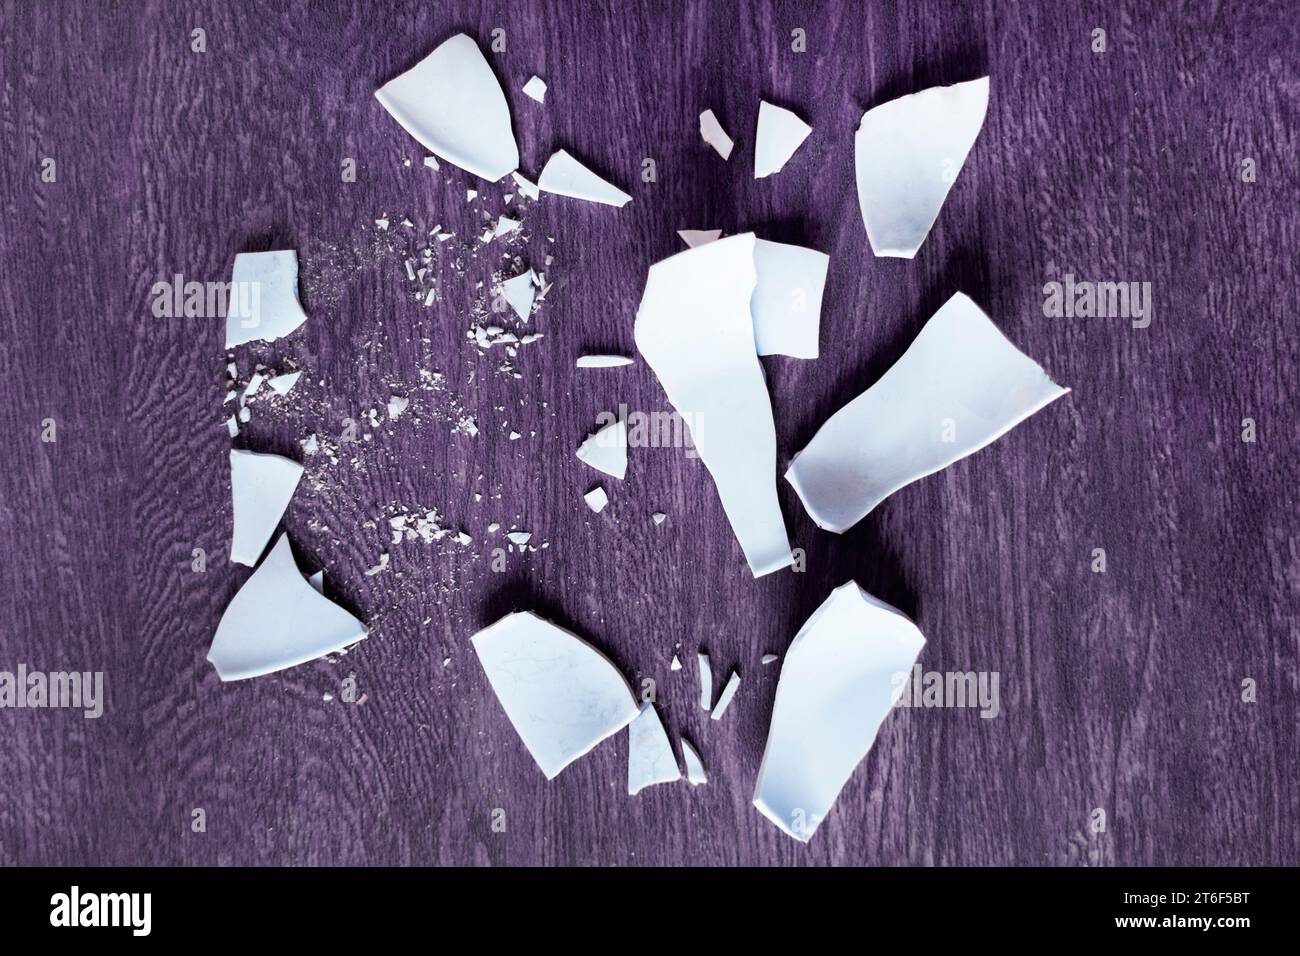 Scherben auf dem Hintergrund. Splitter, Fragmente eines Geschirrs auf dem Boden. Trümmer und Stücke eines gebrochenen Teller, Schale Stockfoto